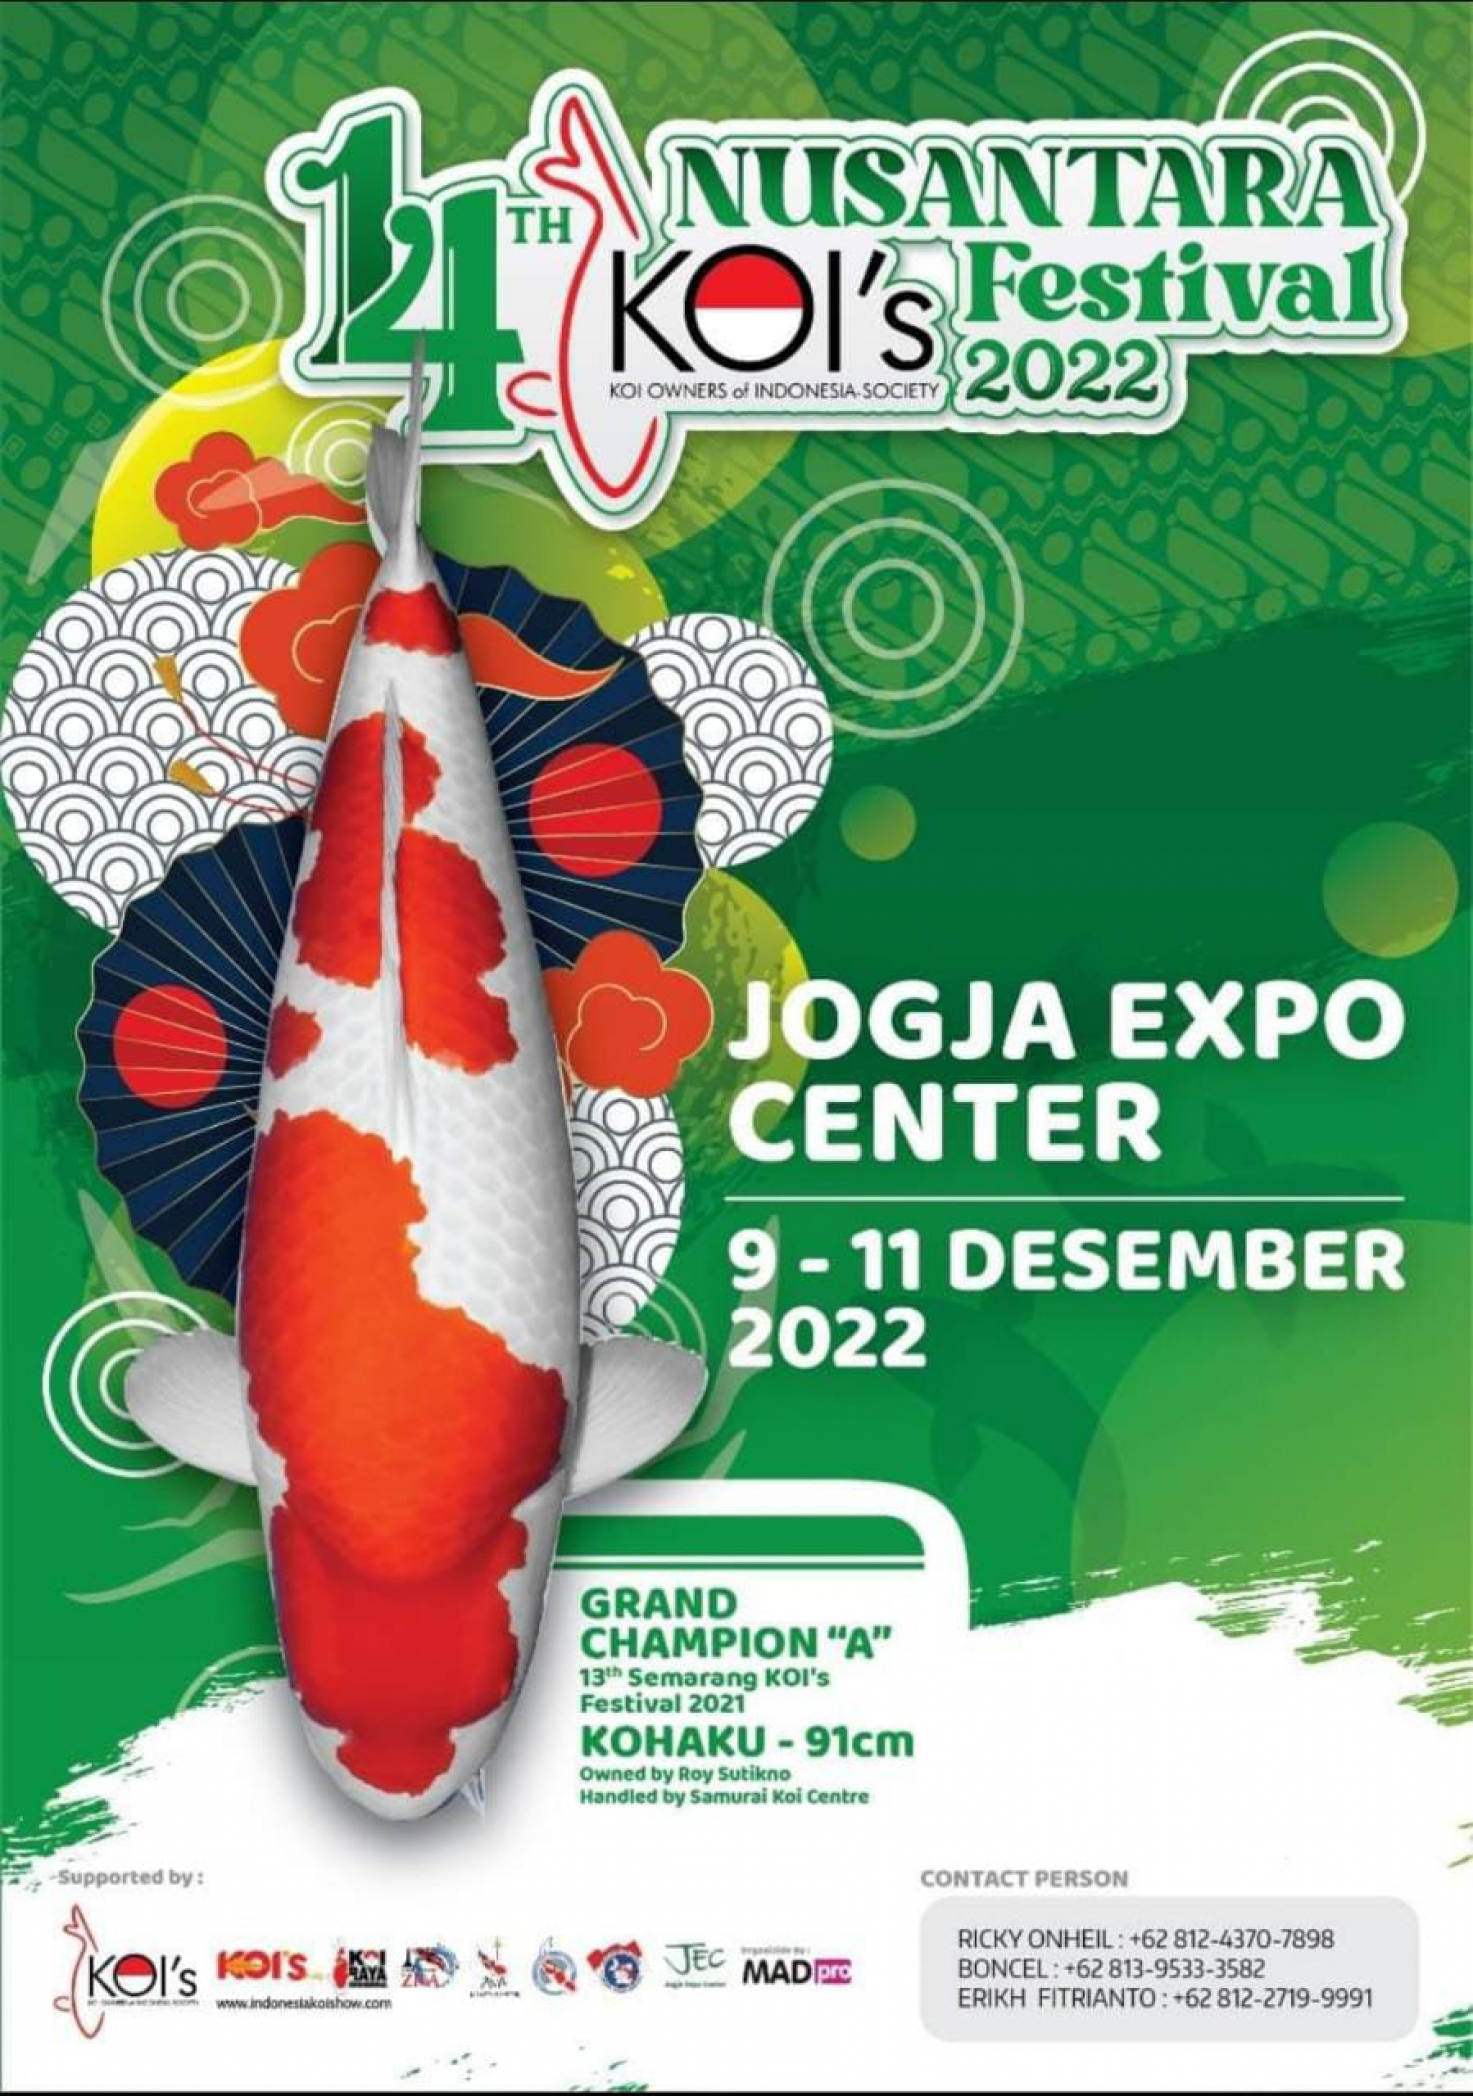 14th Nusantara KOI'S Festival 2022